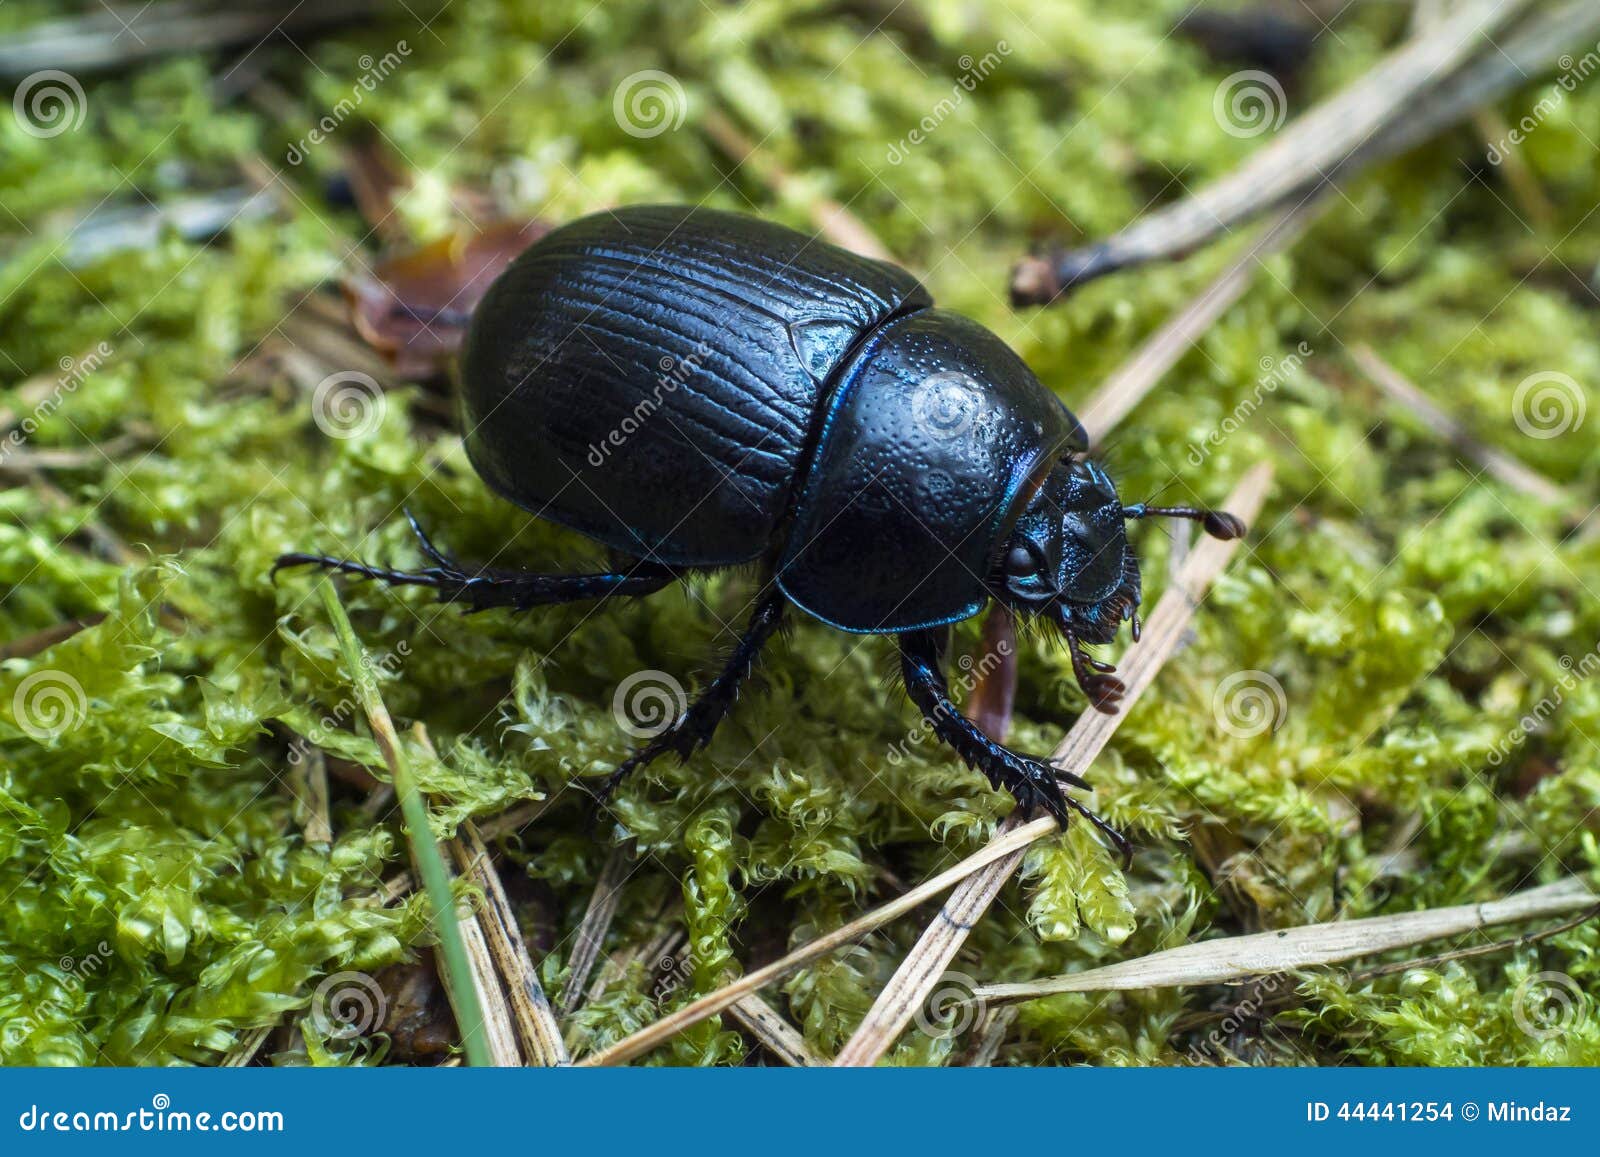 dor beetle